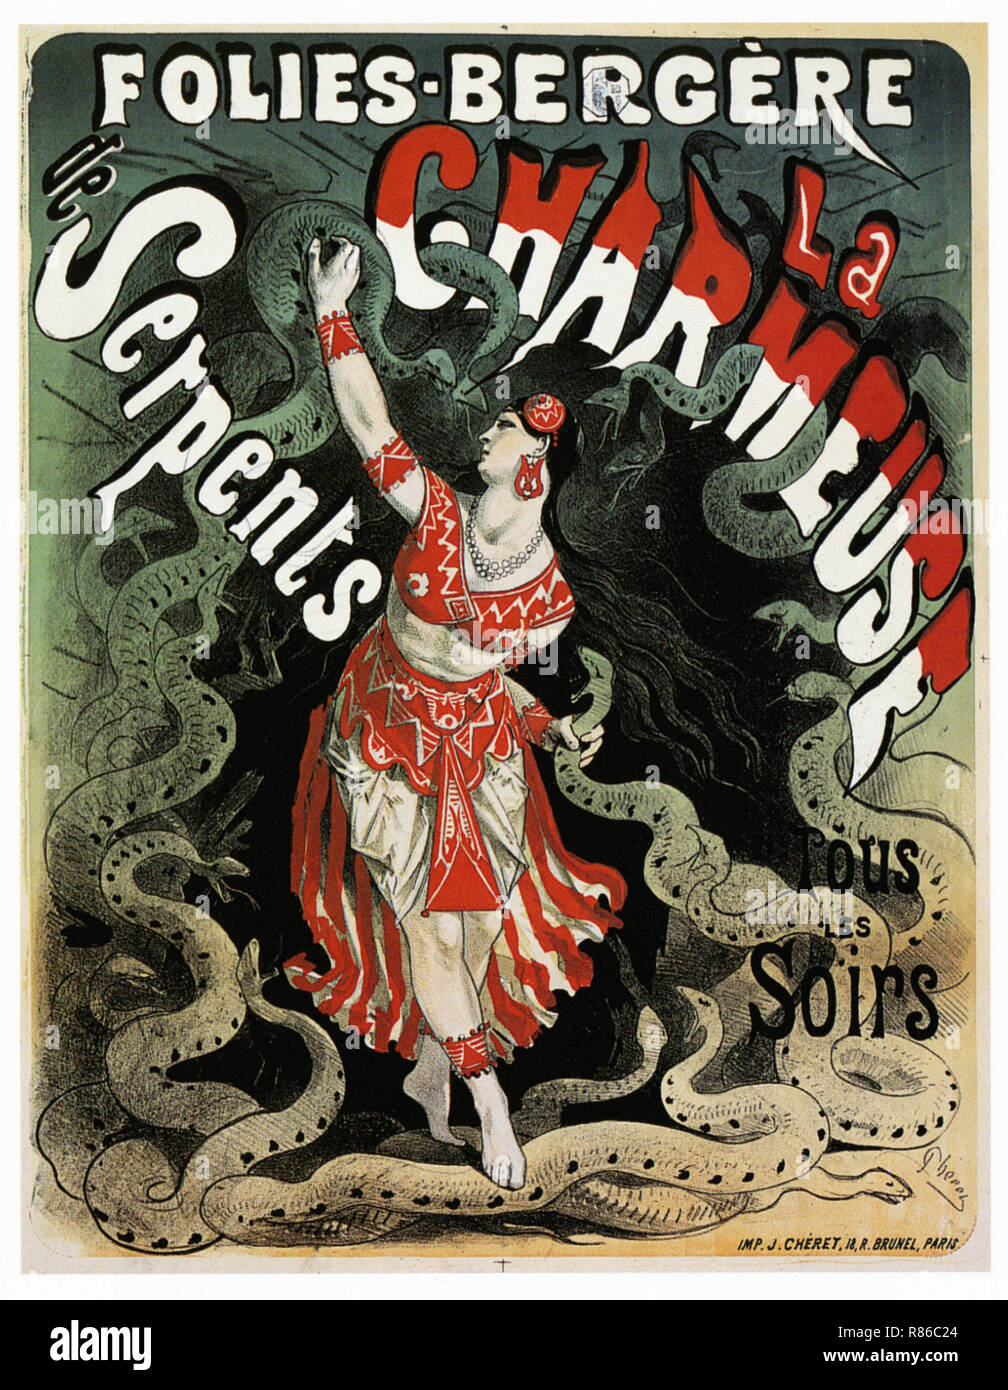 El domador de serpientes Folies Bergeres - Vintage poster publicitario Foto de stock